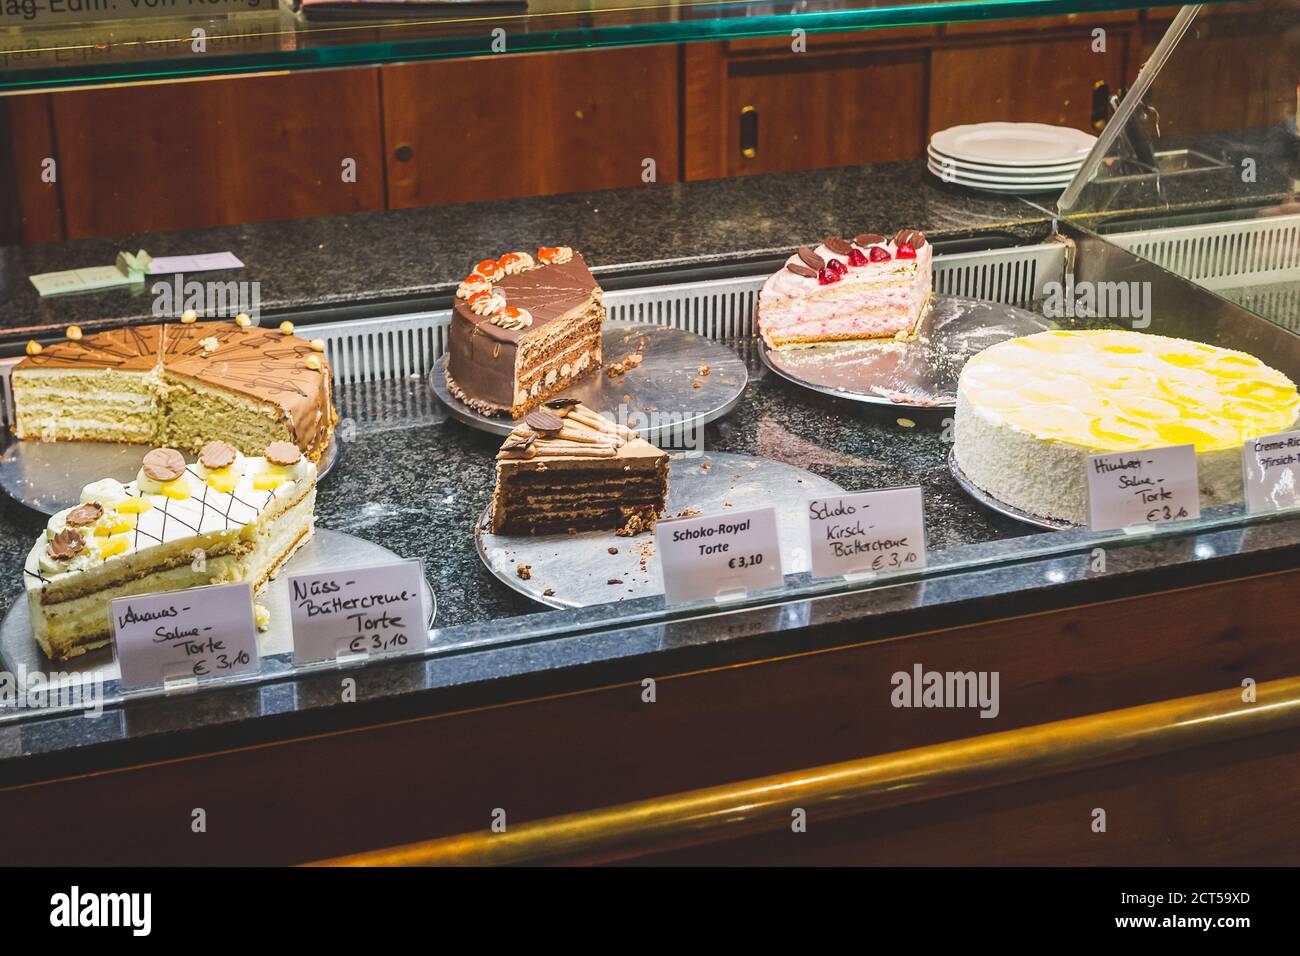 Nahaufnahme einer Vitrine mit verschiedenen Kuchen in einem deutschen  Restaurant. Der Kuchen ist eine Form von süßen Speisen aus Mehl, Zucker und  anderen Zutaten Stockfotografie - Alamy